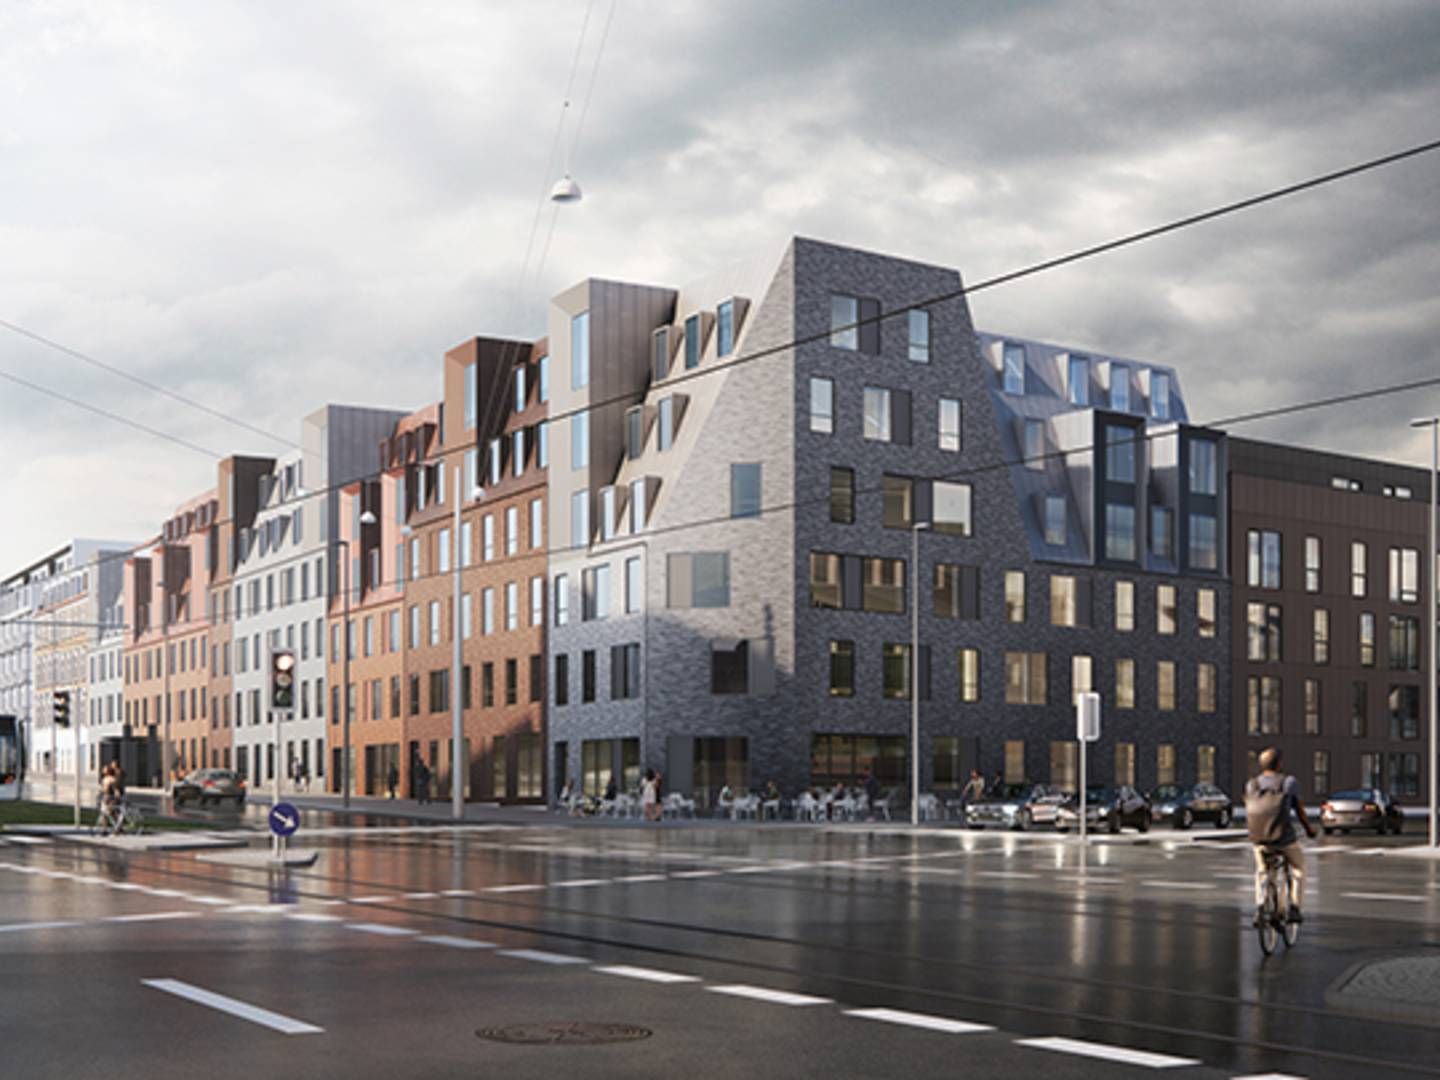 Arkitektfirmaet Cebra har tegnet de kommende bygninger på Nørrebrogade 2-16. | Foto: Visualisering / Cebra